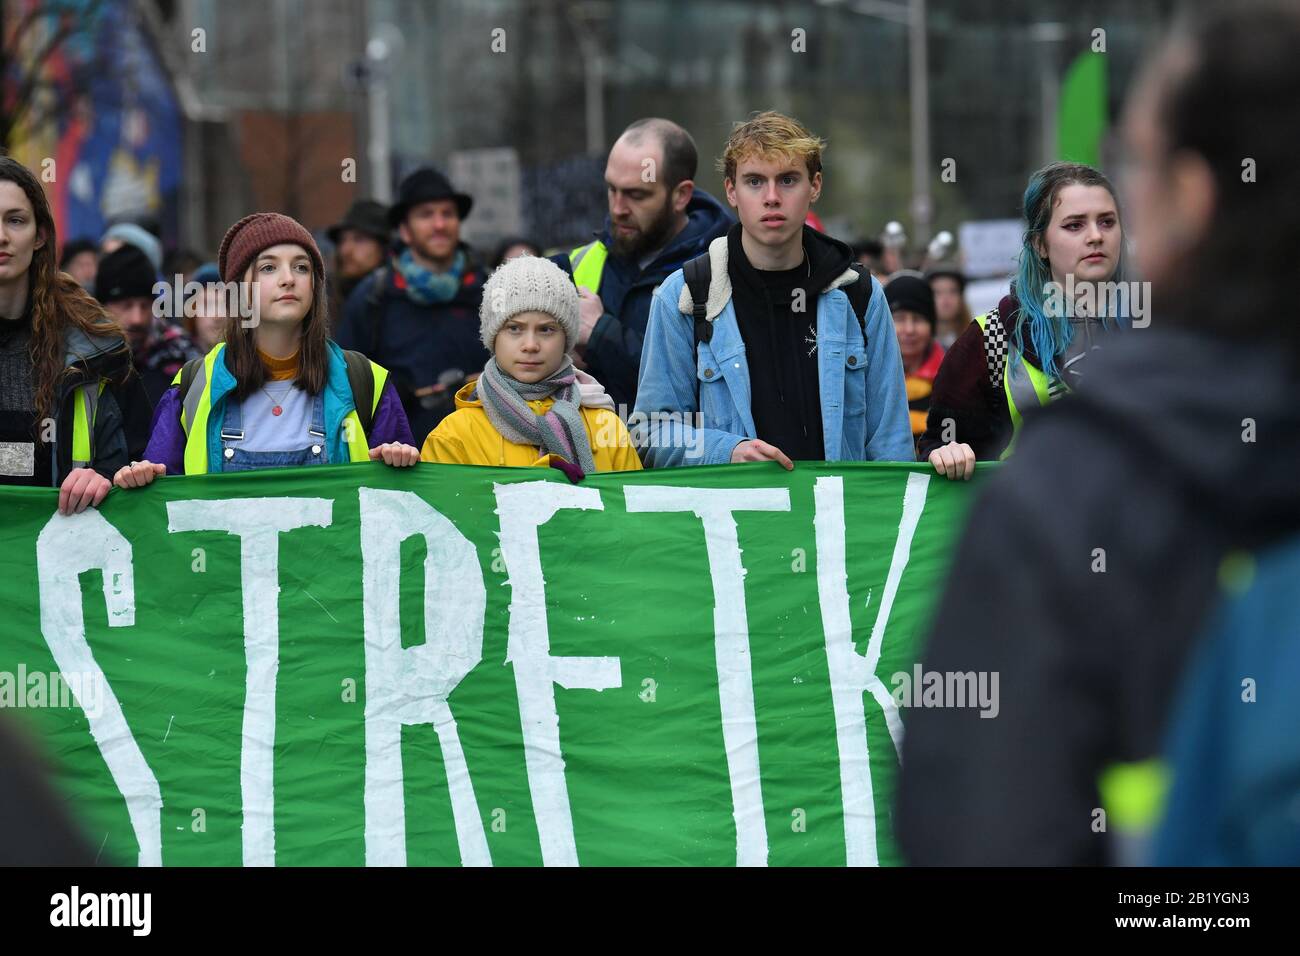 La activista medioambiental Greta Thunberg (centro) se marcha durante una huelga juvenil 4 protesta climática en Bristol. Foto de stock